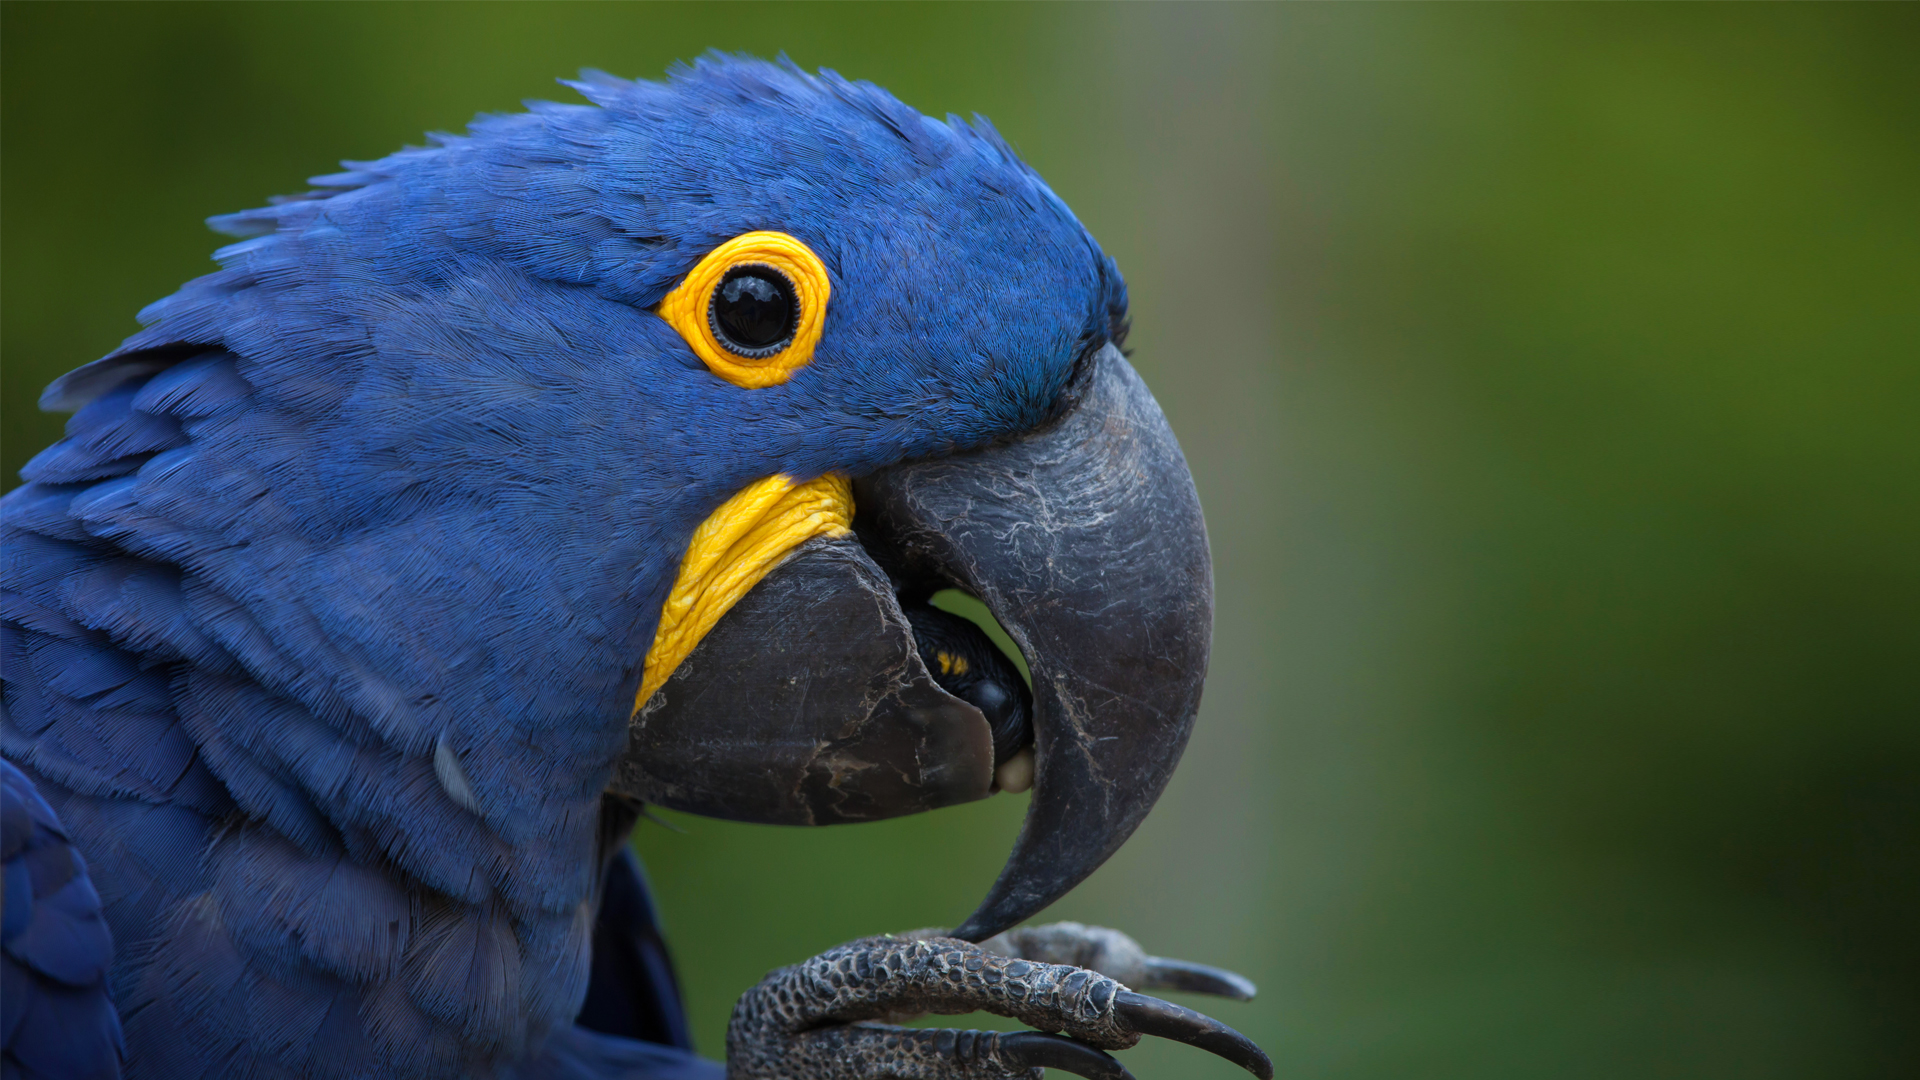 Macaw | San Diego Zoo Animals & Plants